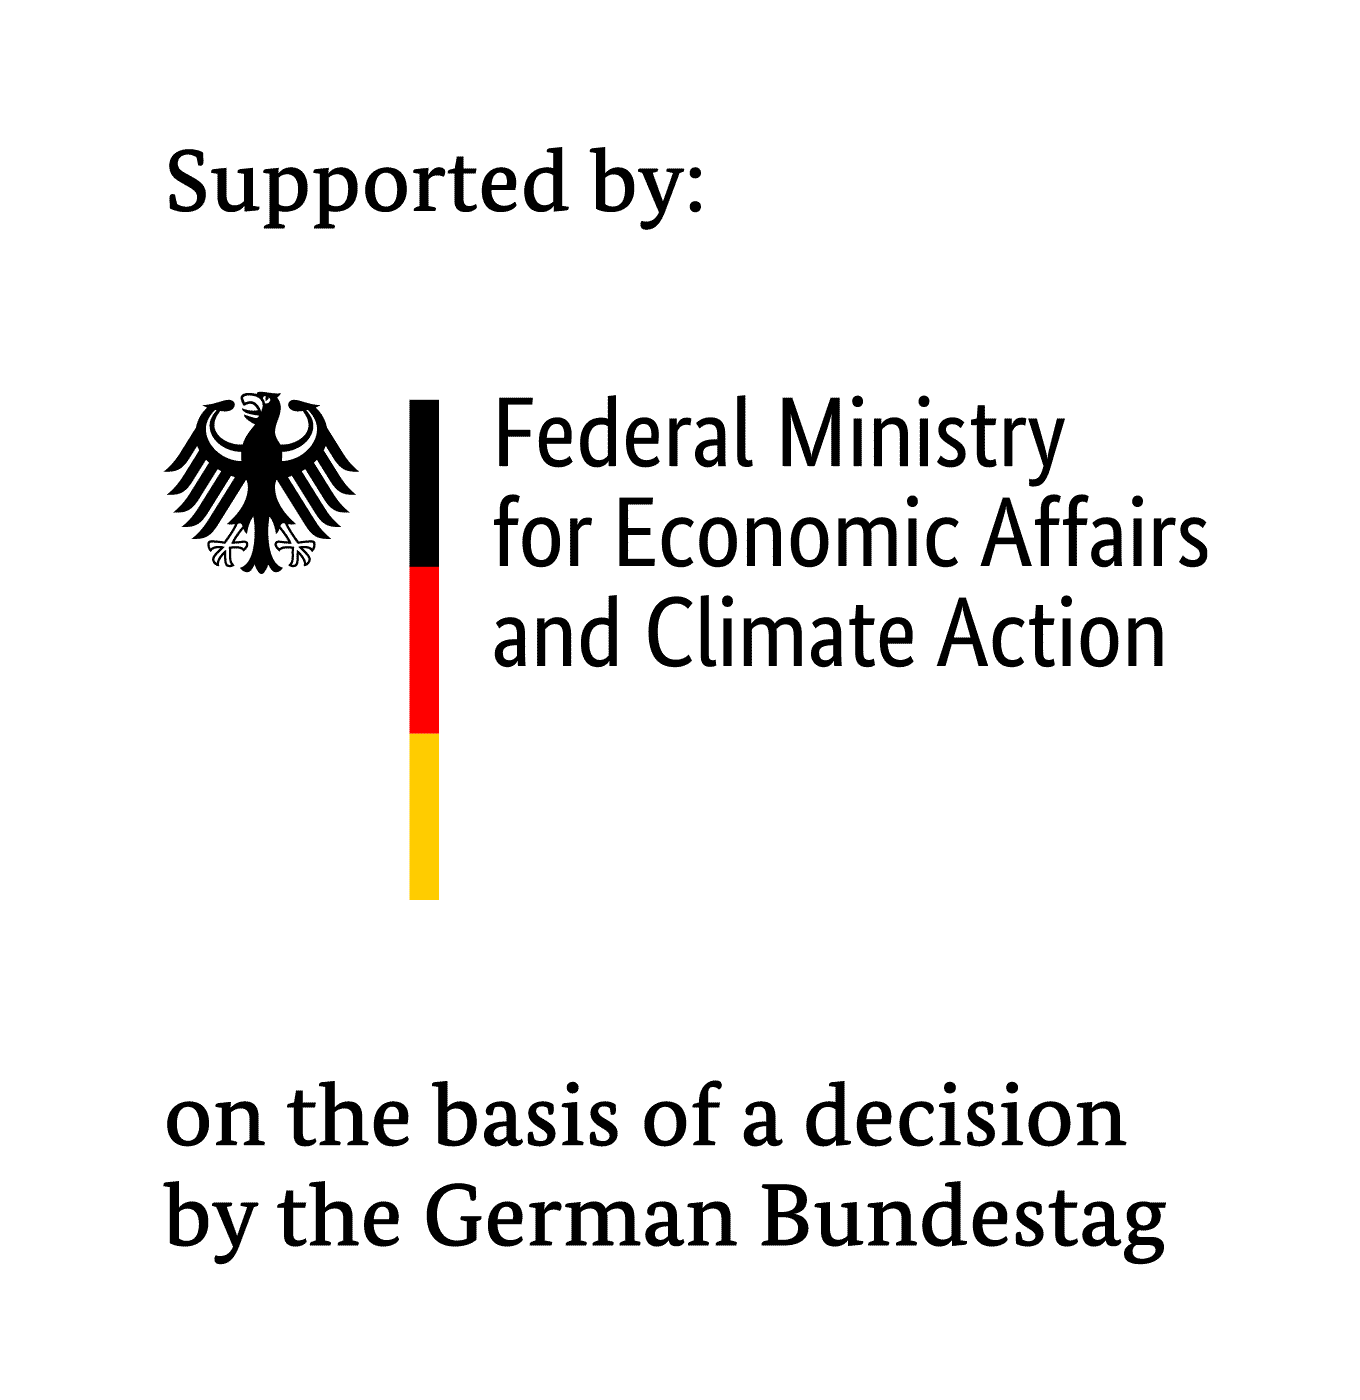 Supported by: Bundesministerium für Wirtschaft und Klimaschutz